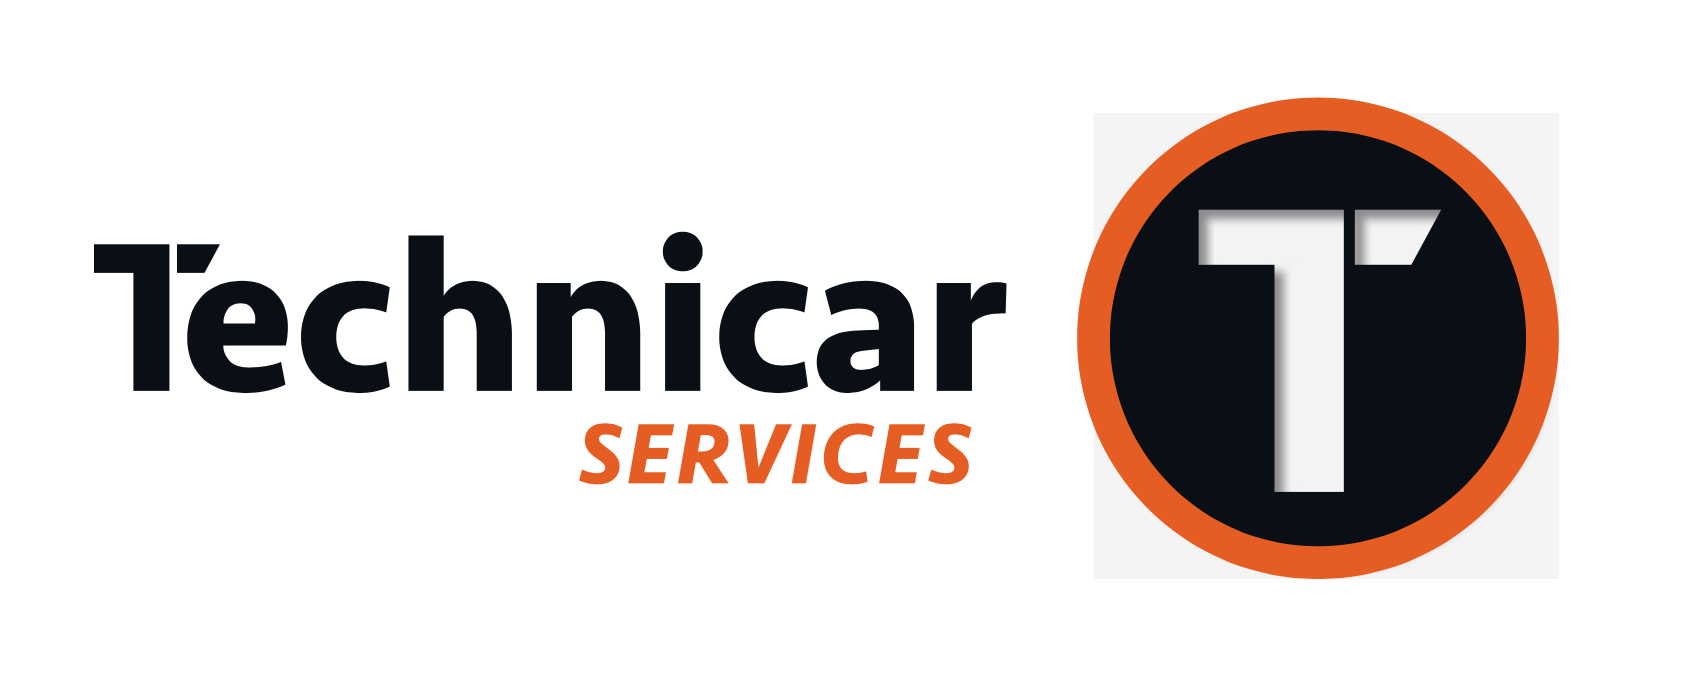 Technicar - Auto Passion logo